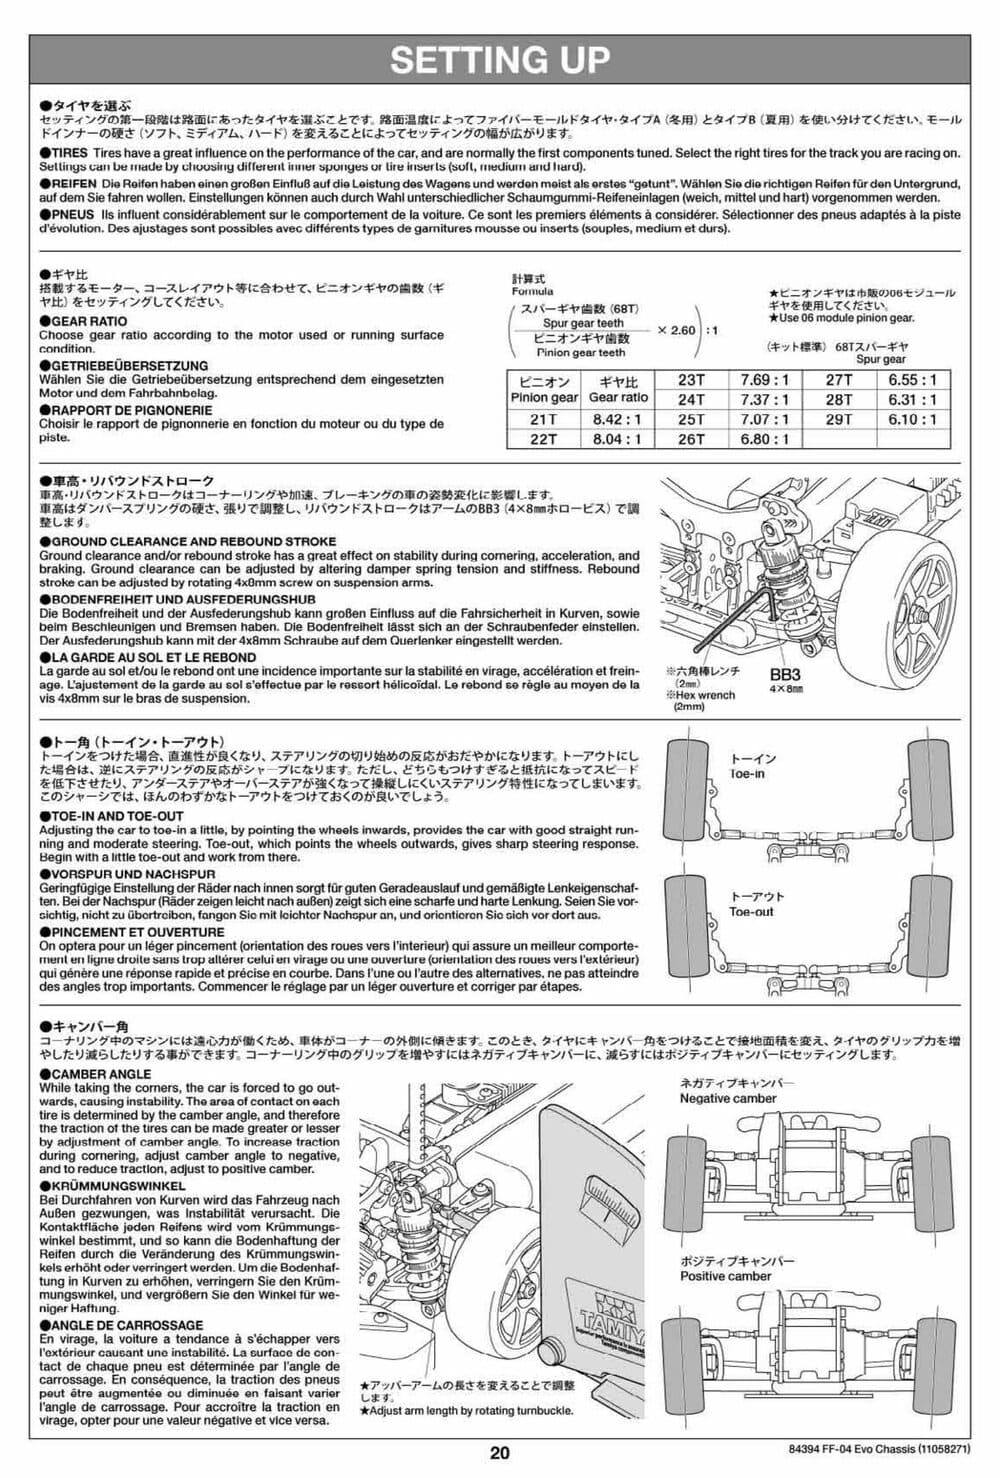 Tamiya - FF-04 Evo Chassis - Manual - Page 20